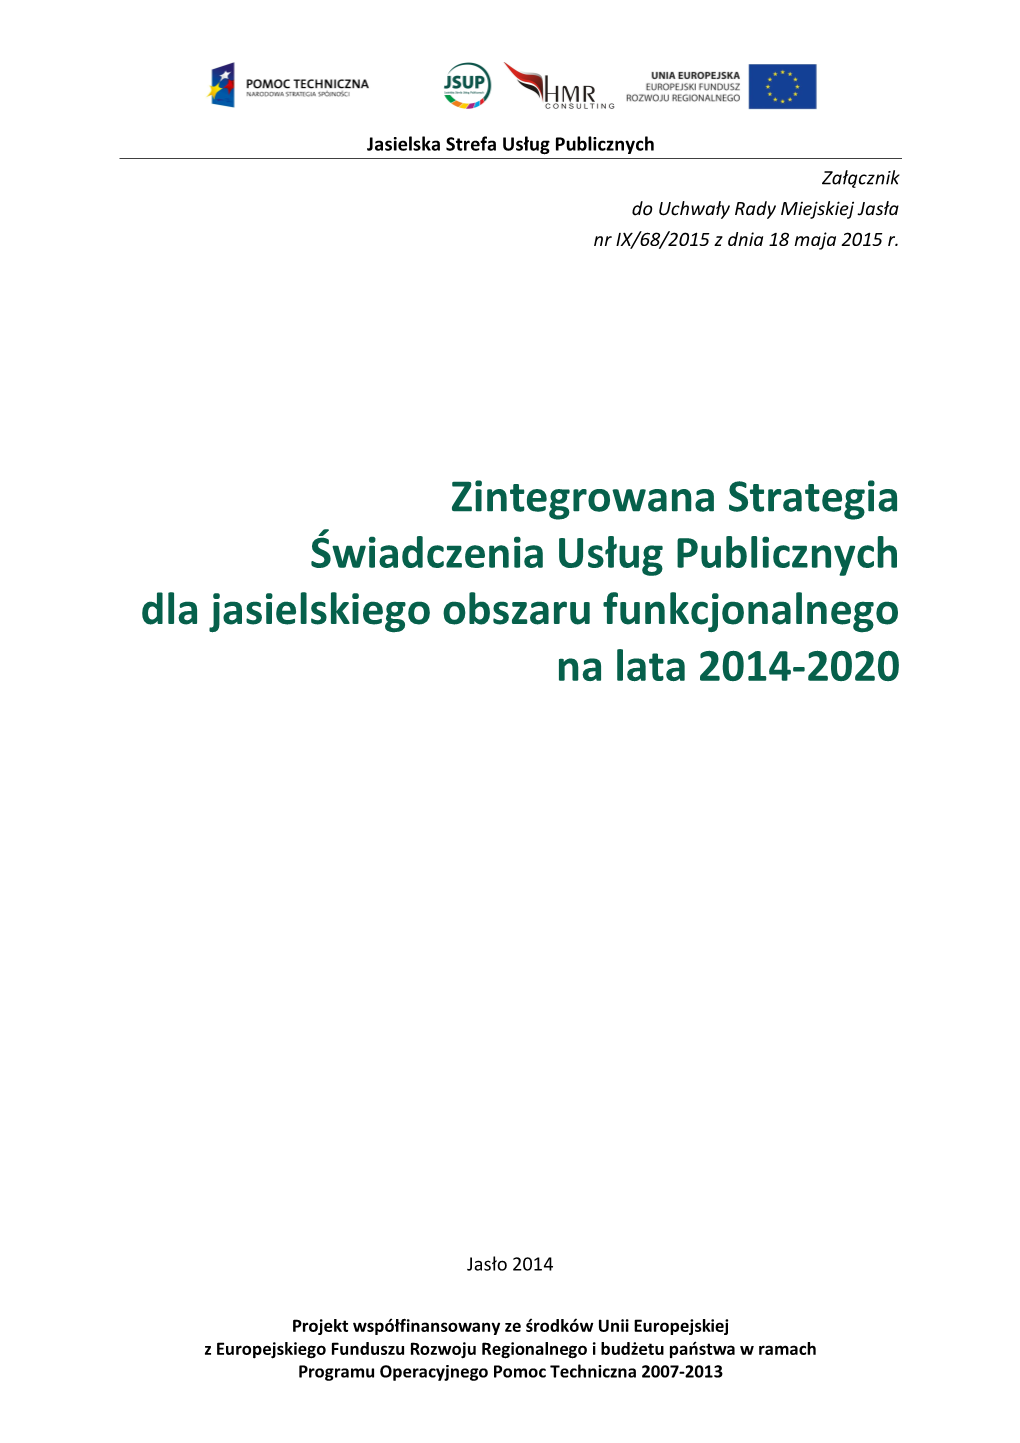 Zintegrowana Strategia Świadczenia Usług Publicznych Dla Jasielskiego Obszaru Funkcjonalnego Na Lata 2014-2020